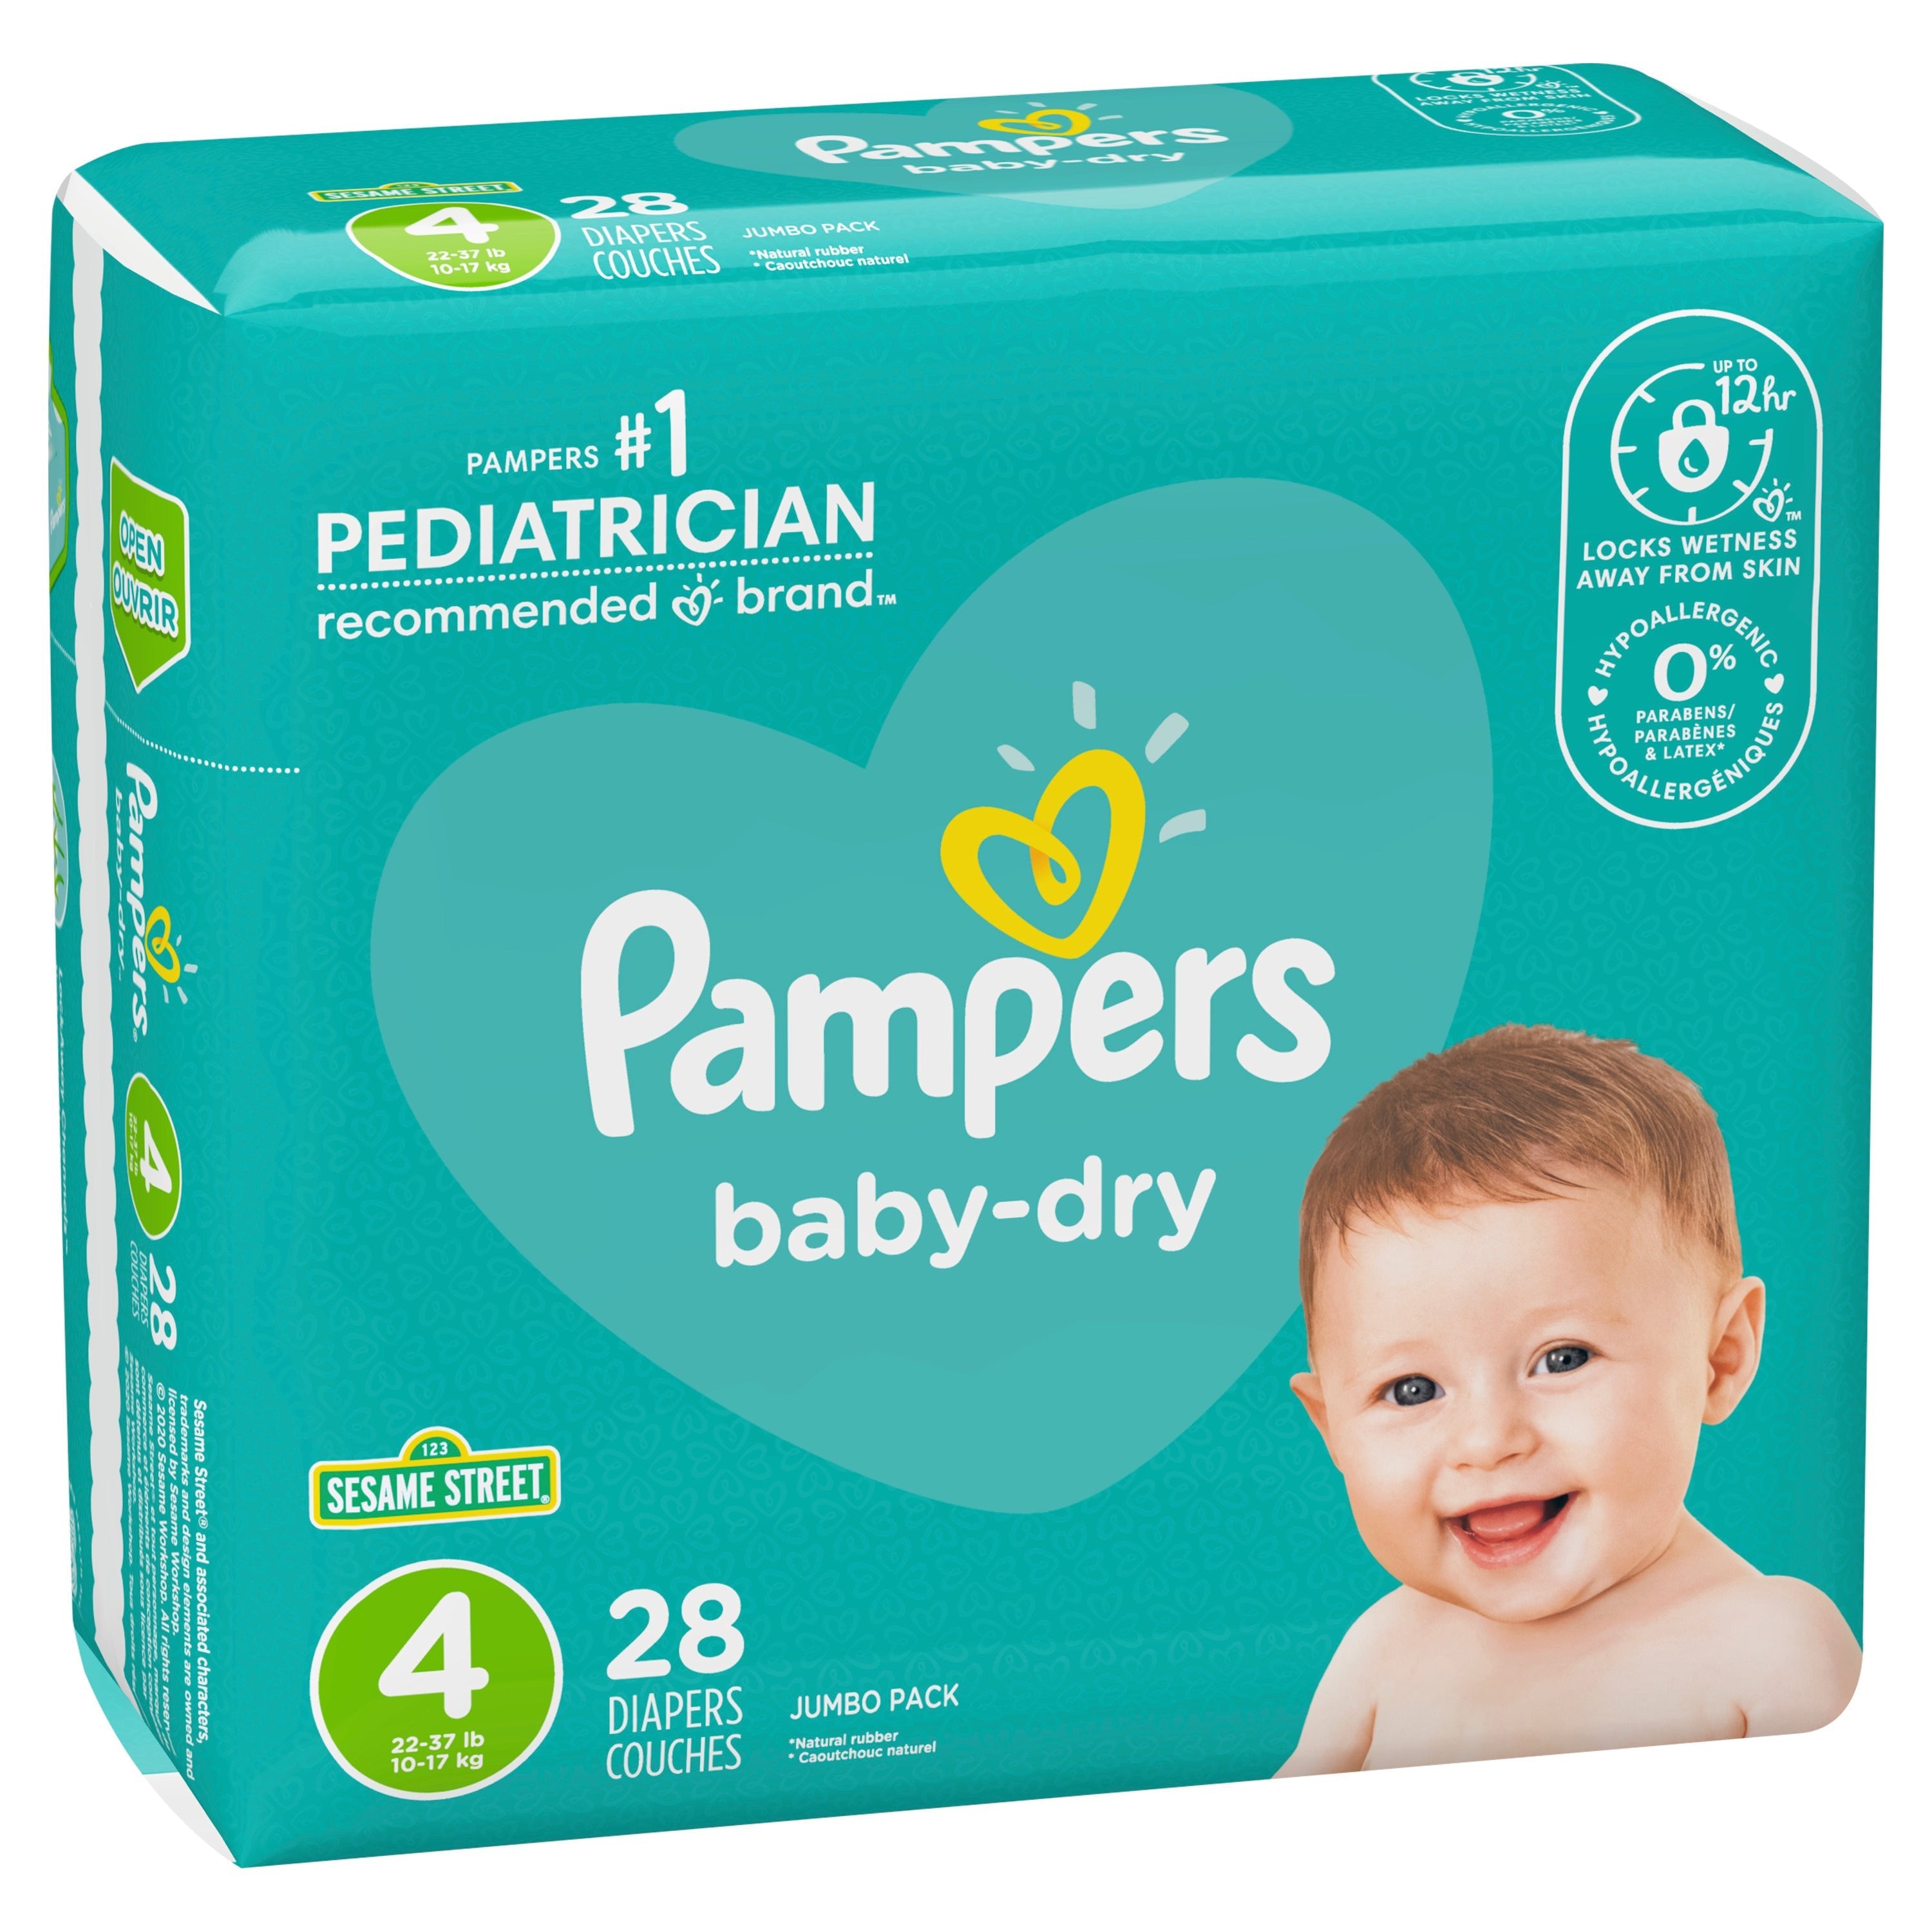 Expliciet Ongehoorzaamheid vrijheid Pampers Baby-Dry Extra Protection Diapers, Size 4, (28 Count)